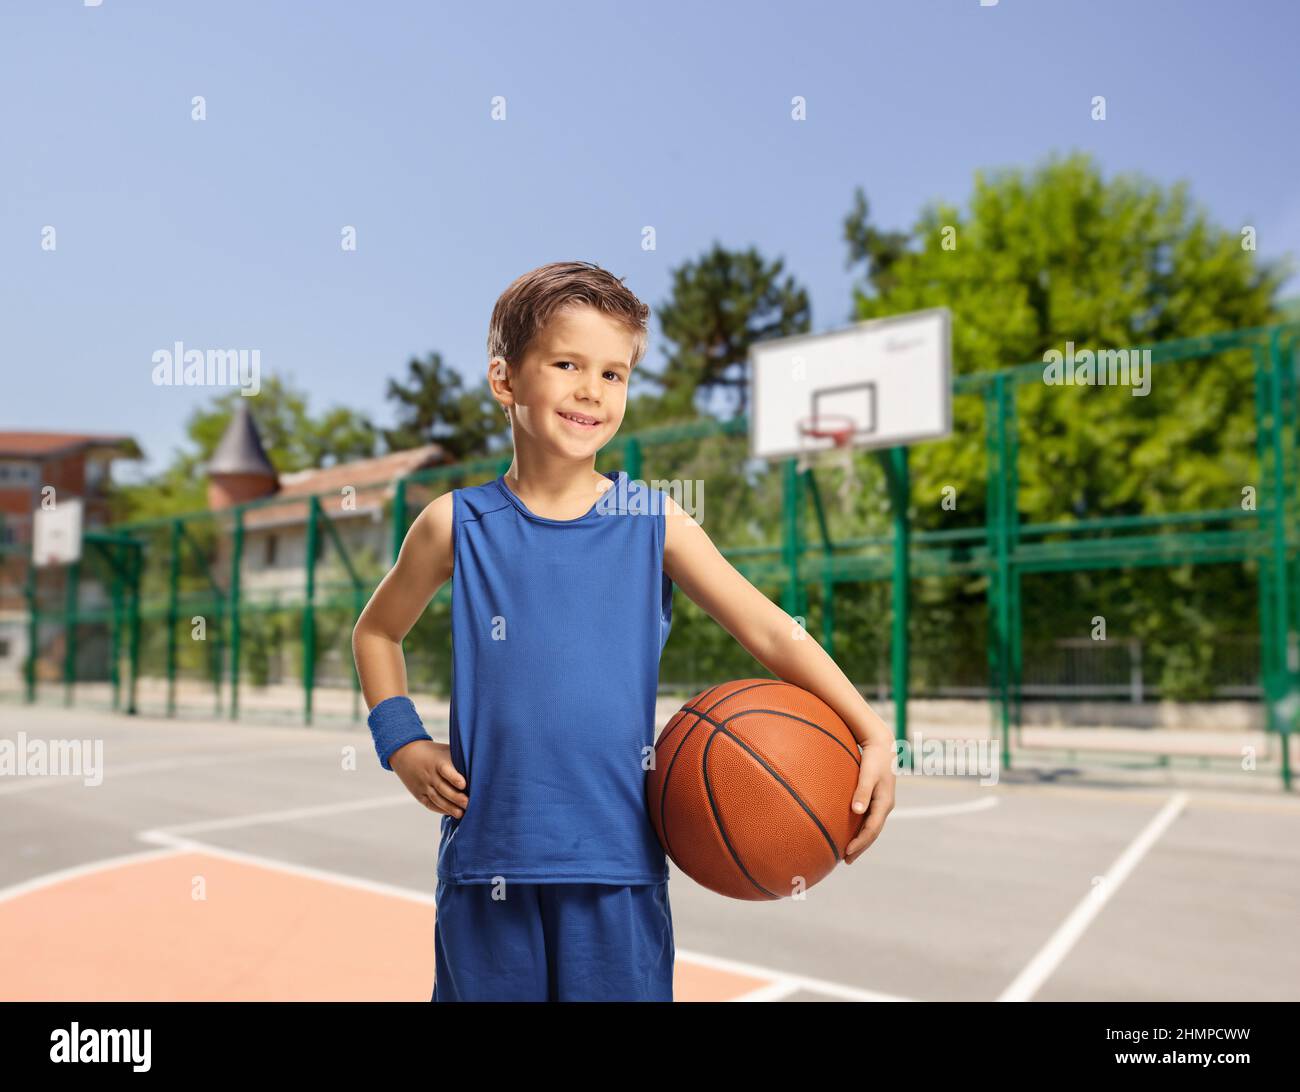 Garçon dans un jersey bleu tenant un basket-ball sur un terrain de basket-ball extérieur Banque D'Images